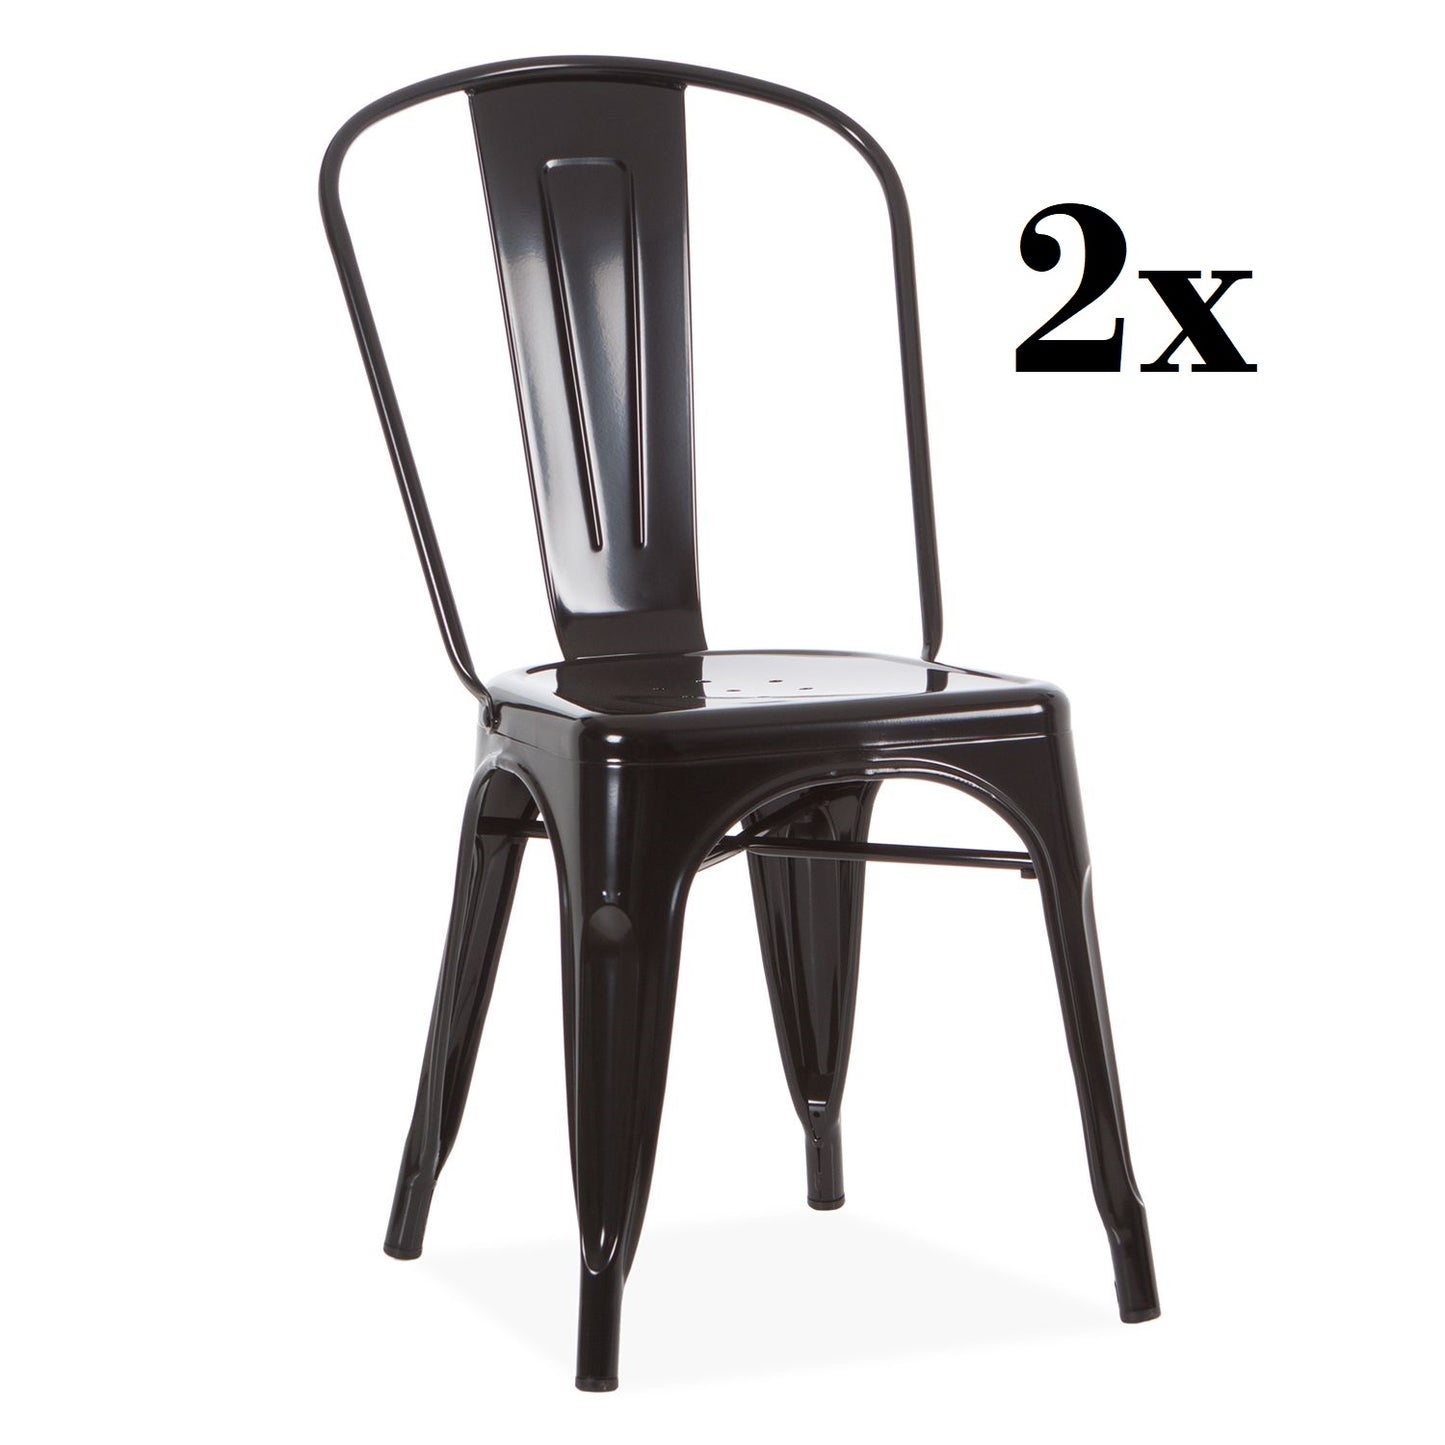 Conjunto de 2x cadeiras ANNA